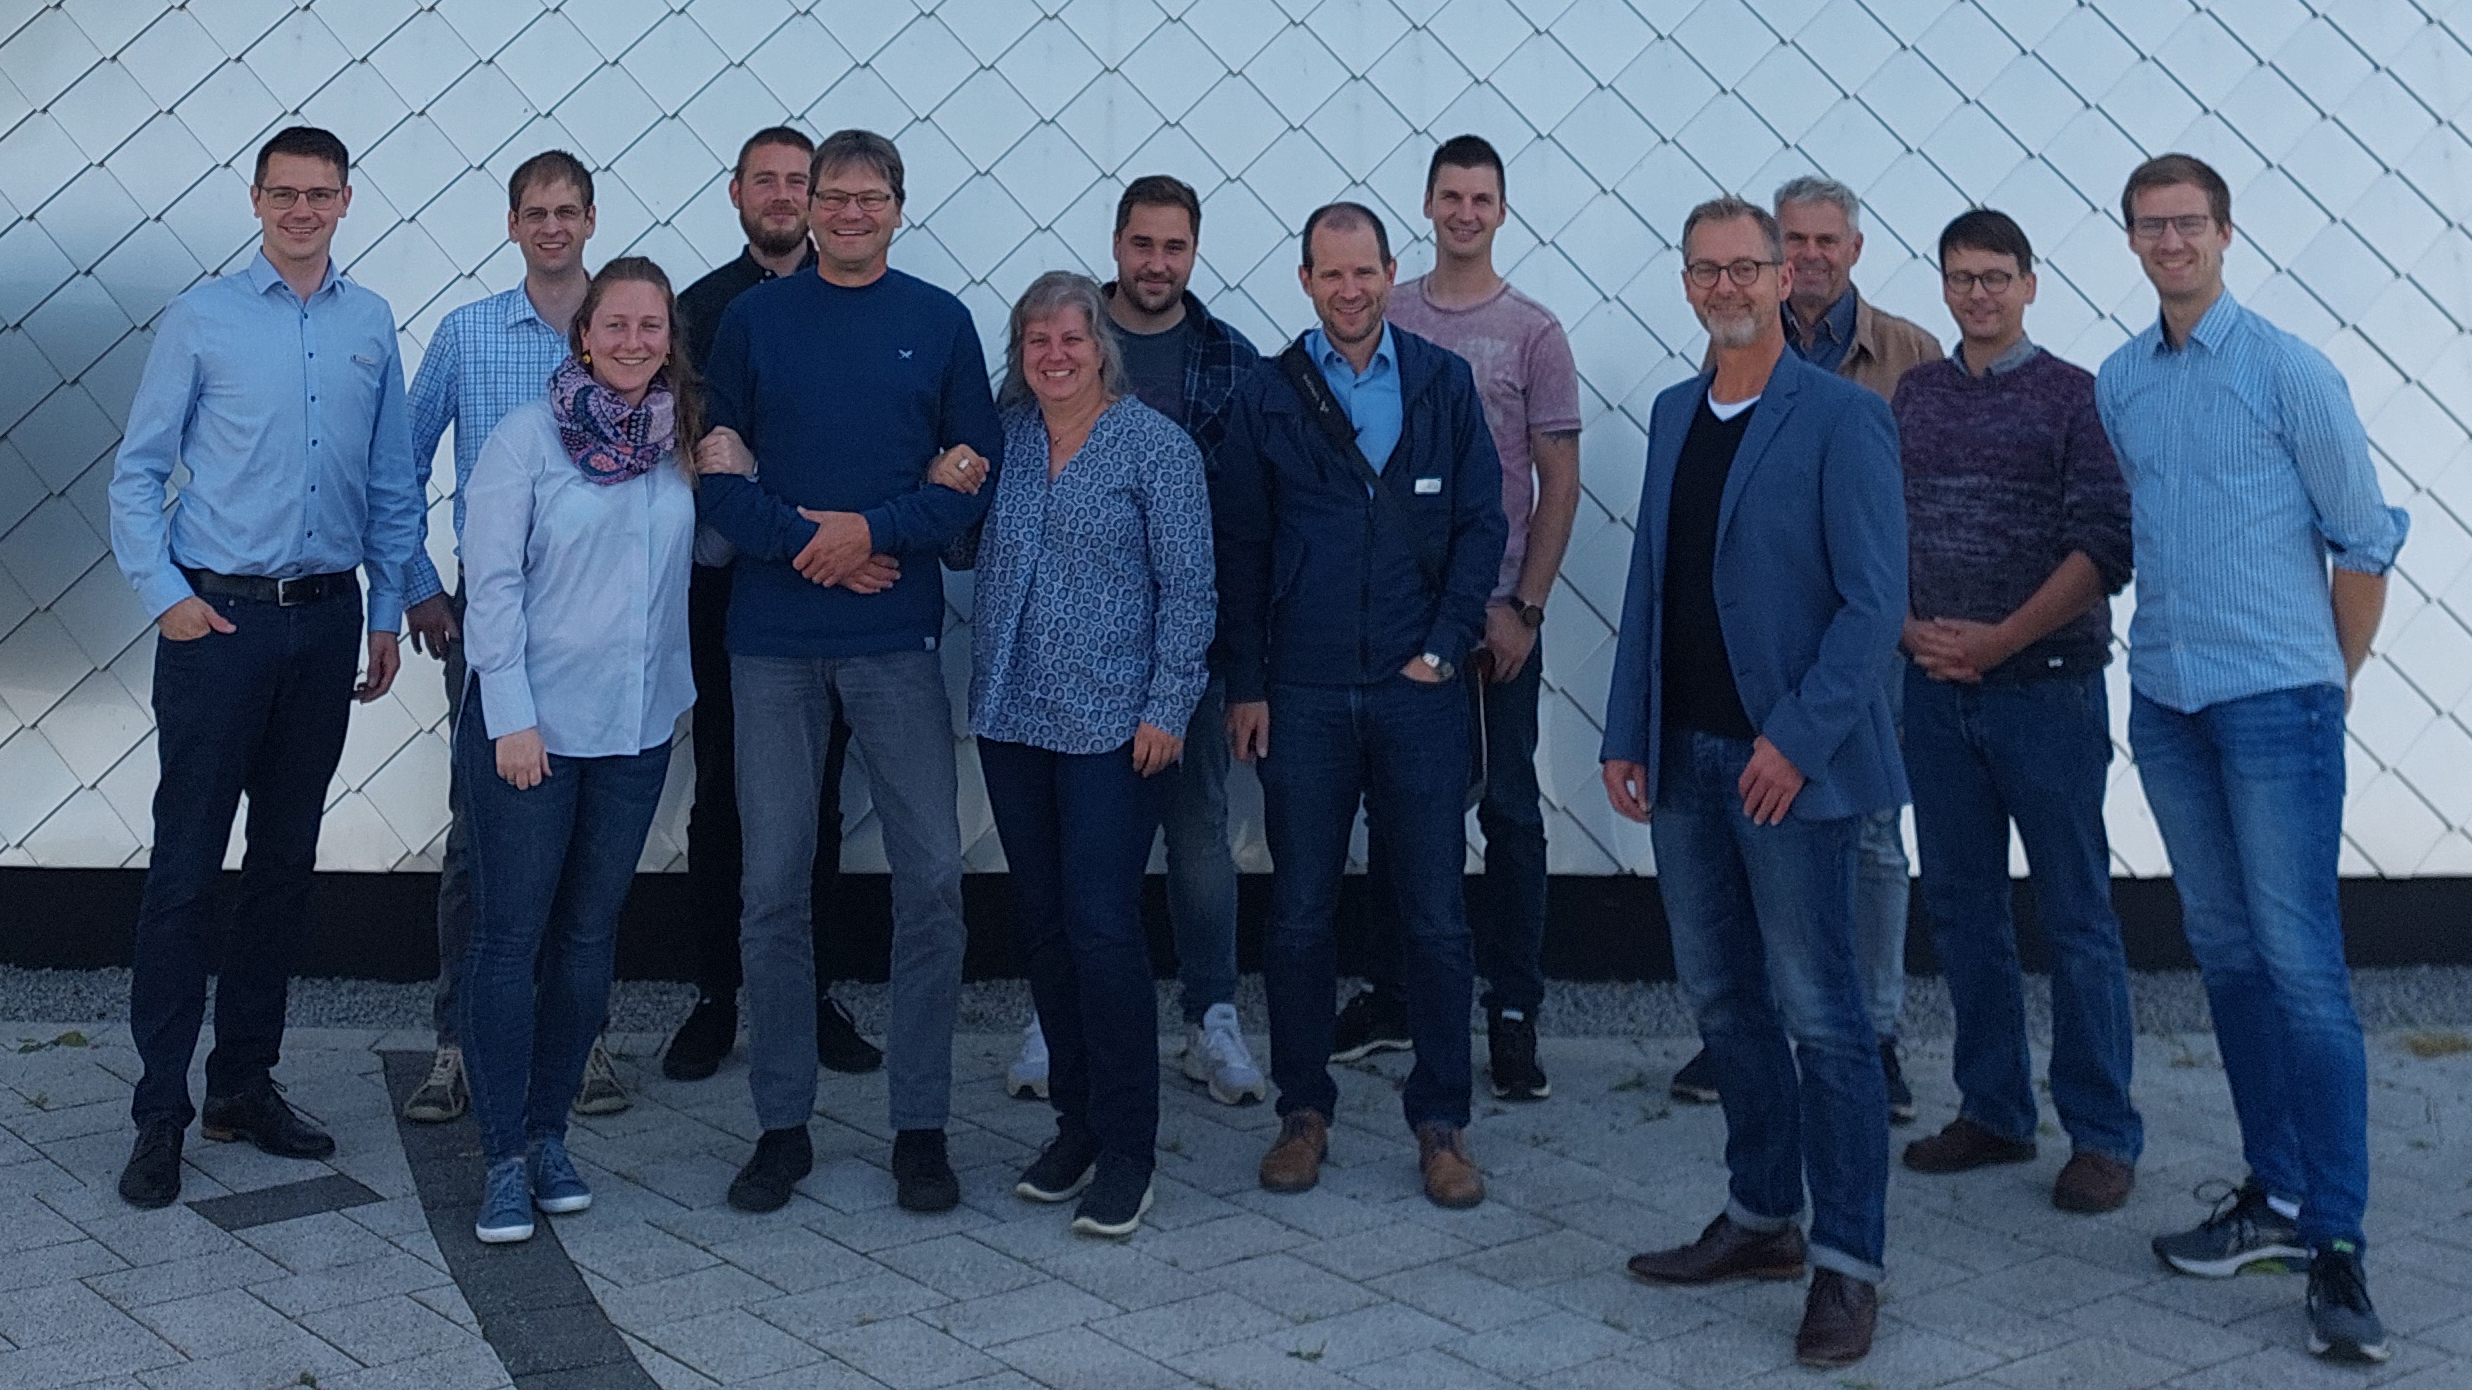 Gruppenfoto von 13 Personen - Mitglieder des Klimaschutznetzwerkes Ostfriesland